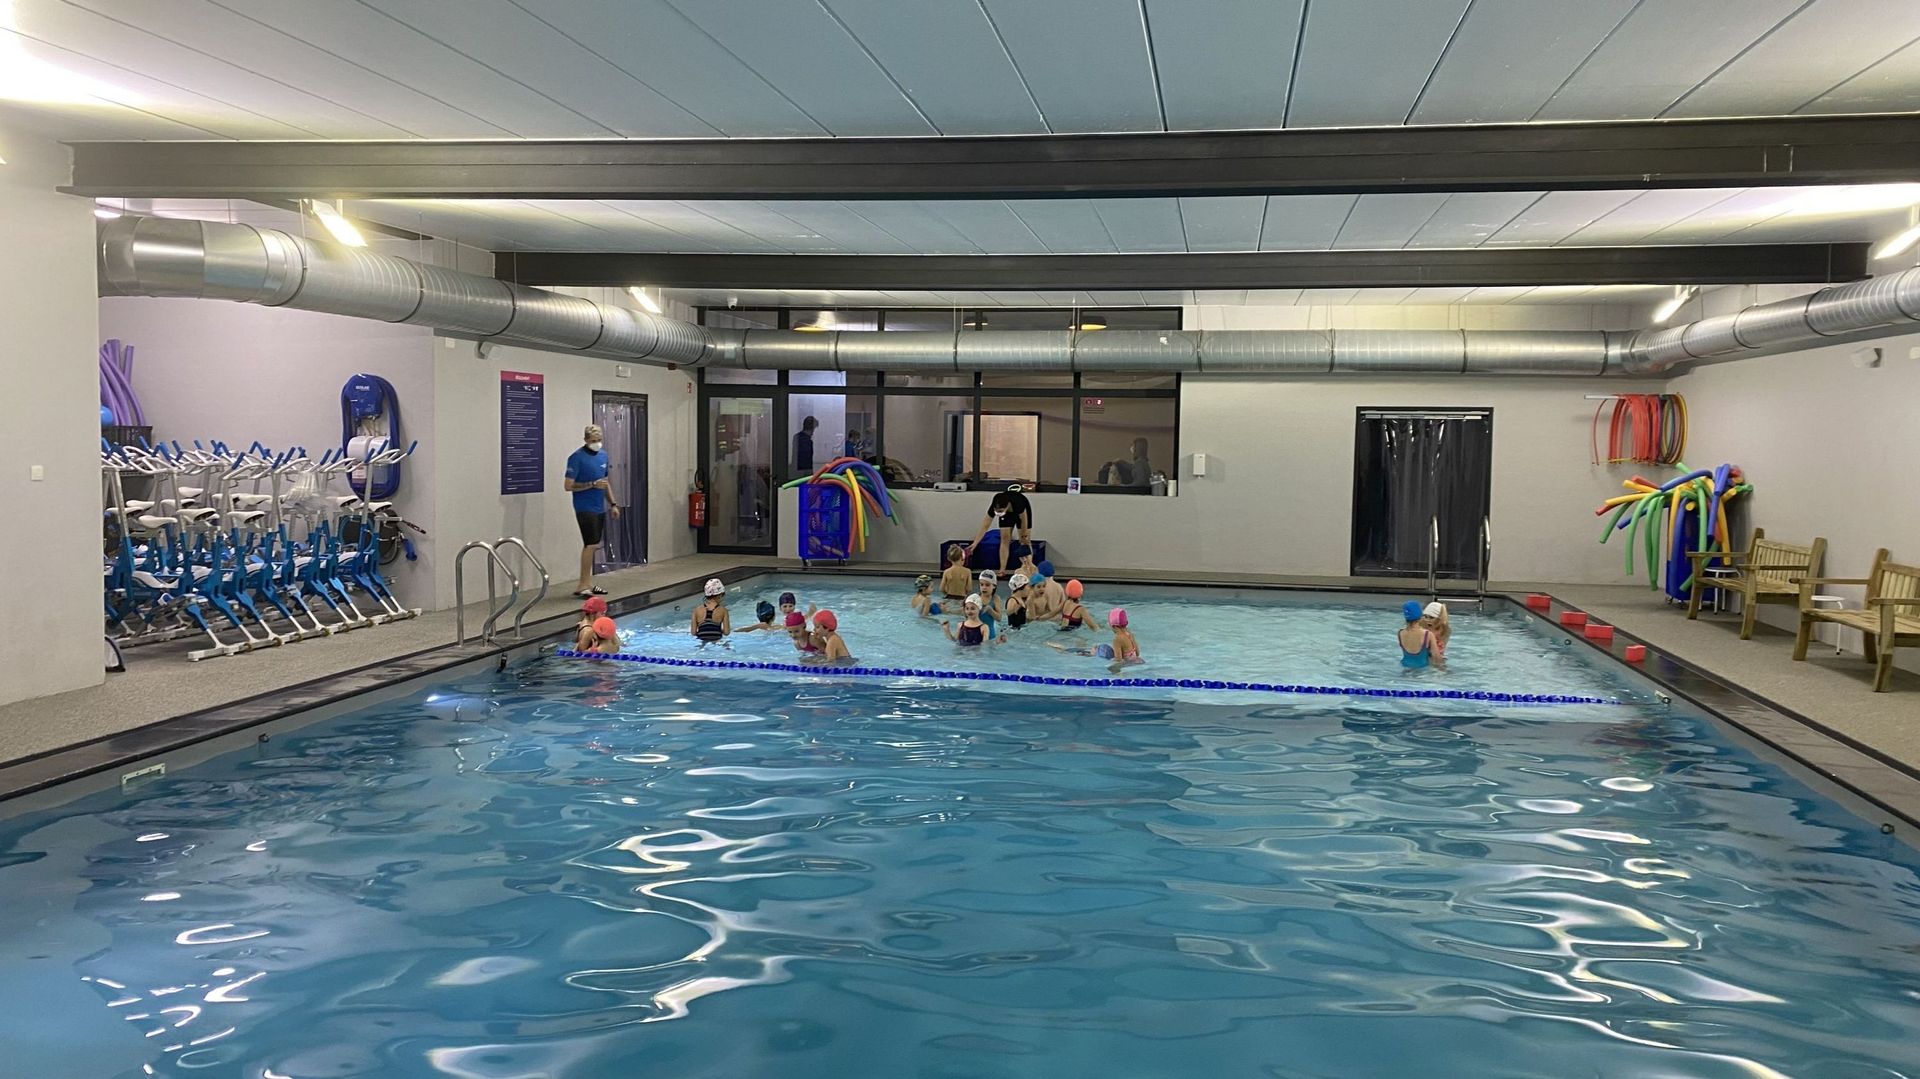 Une nouvelle piscine privée de 16 mètres sur 8 vient d’être inaugurée à Eghezée. Des cours de natation y sont notamment organisés pour les écoles de la région confrontées au manque de bassins publics.